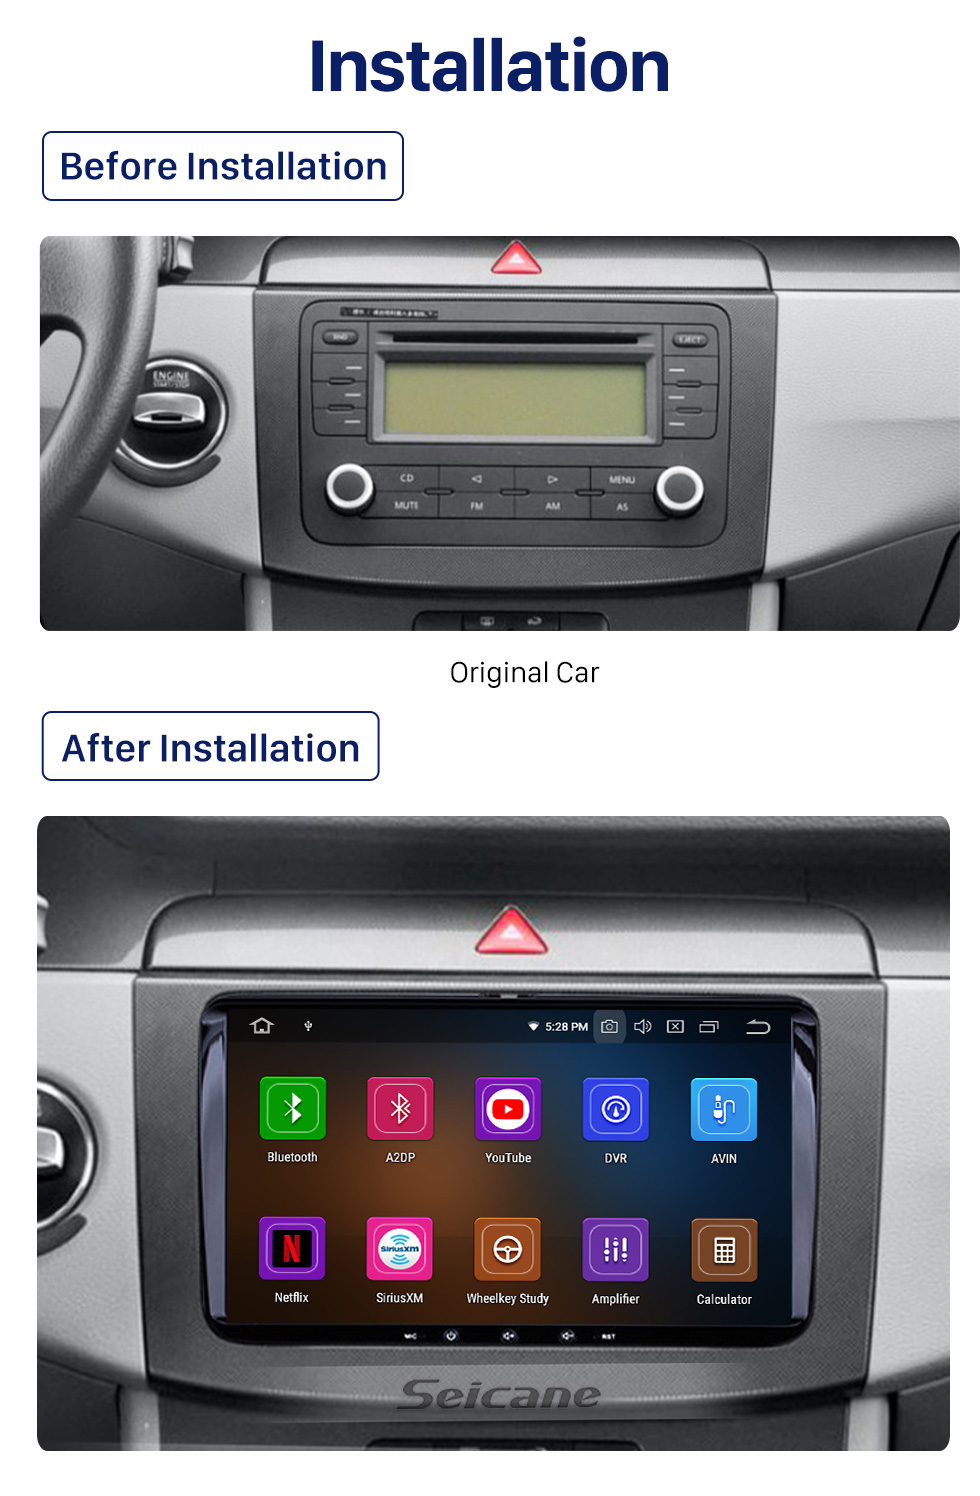 Seicane Android 10.0 Sistema de navegación GPS para 2009 2010 2011 VW Volkswagen Passat B6 con reproductor de DVD Radio Bluetooth Mirror Link OBD2 DVR Cámara de vista trasera Control del volante 3G WiFi